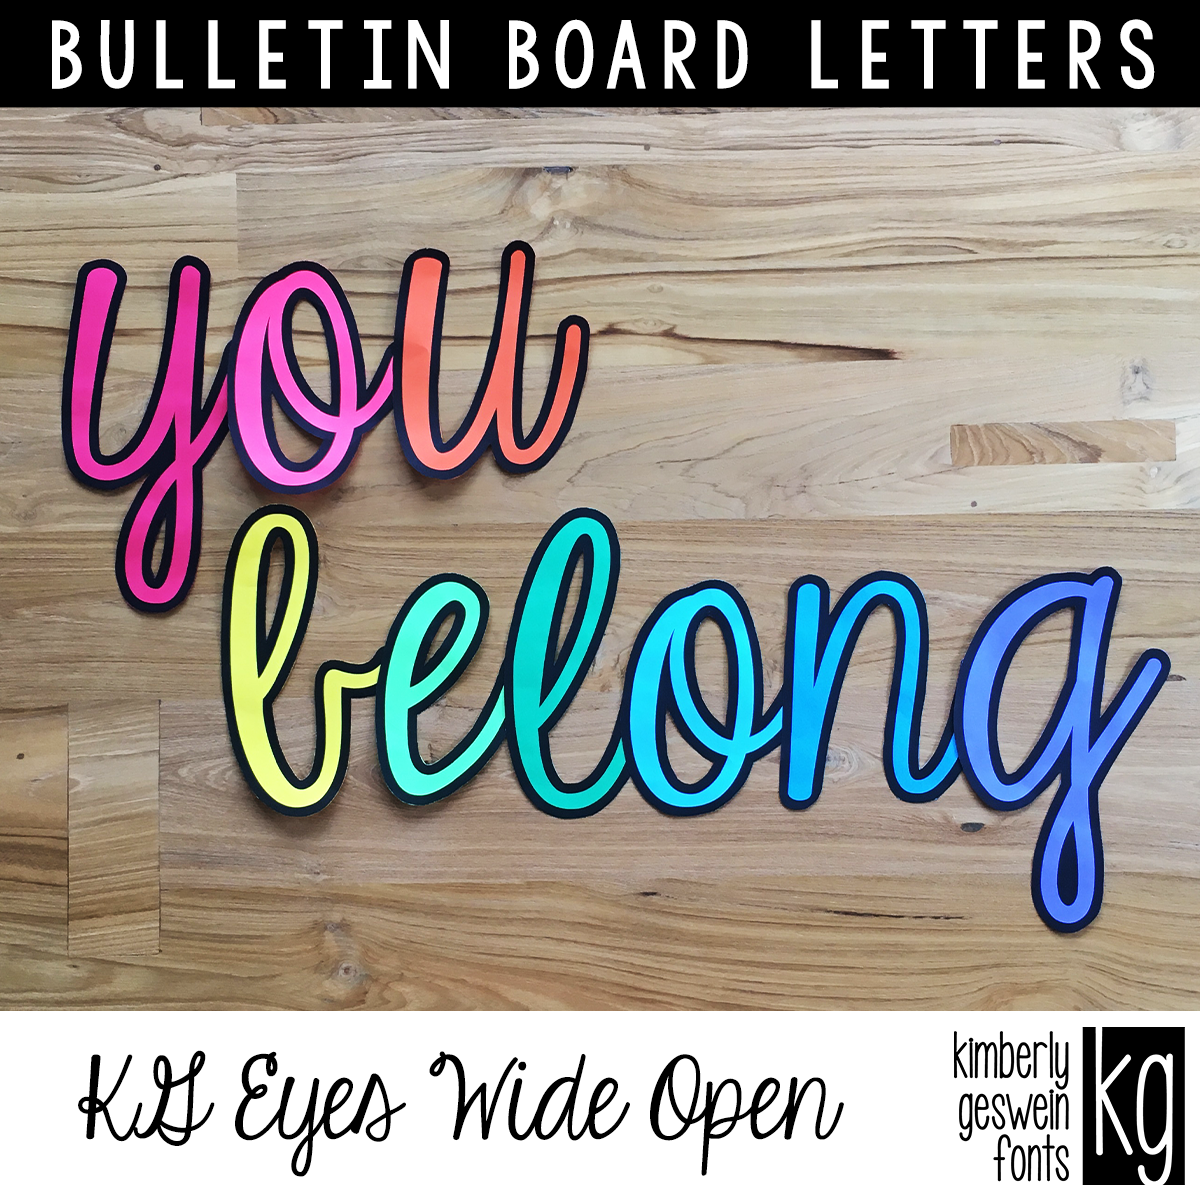 KG Eyes Wide Open Bulletin Board Letters - Kimberly Geswein Fonts